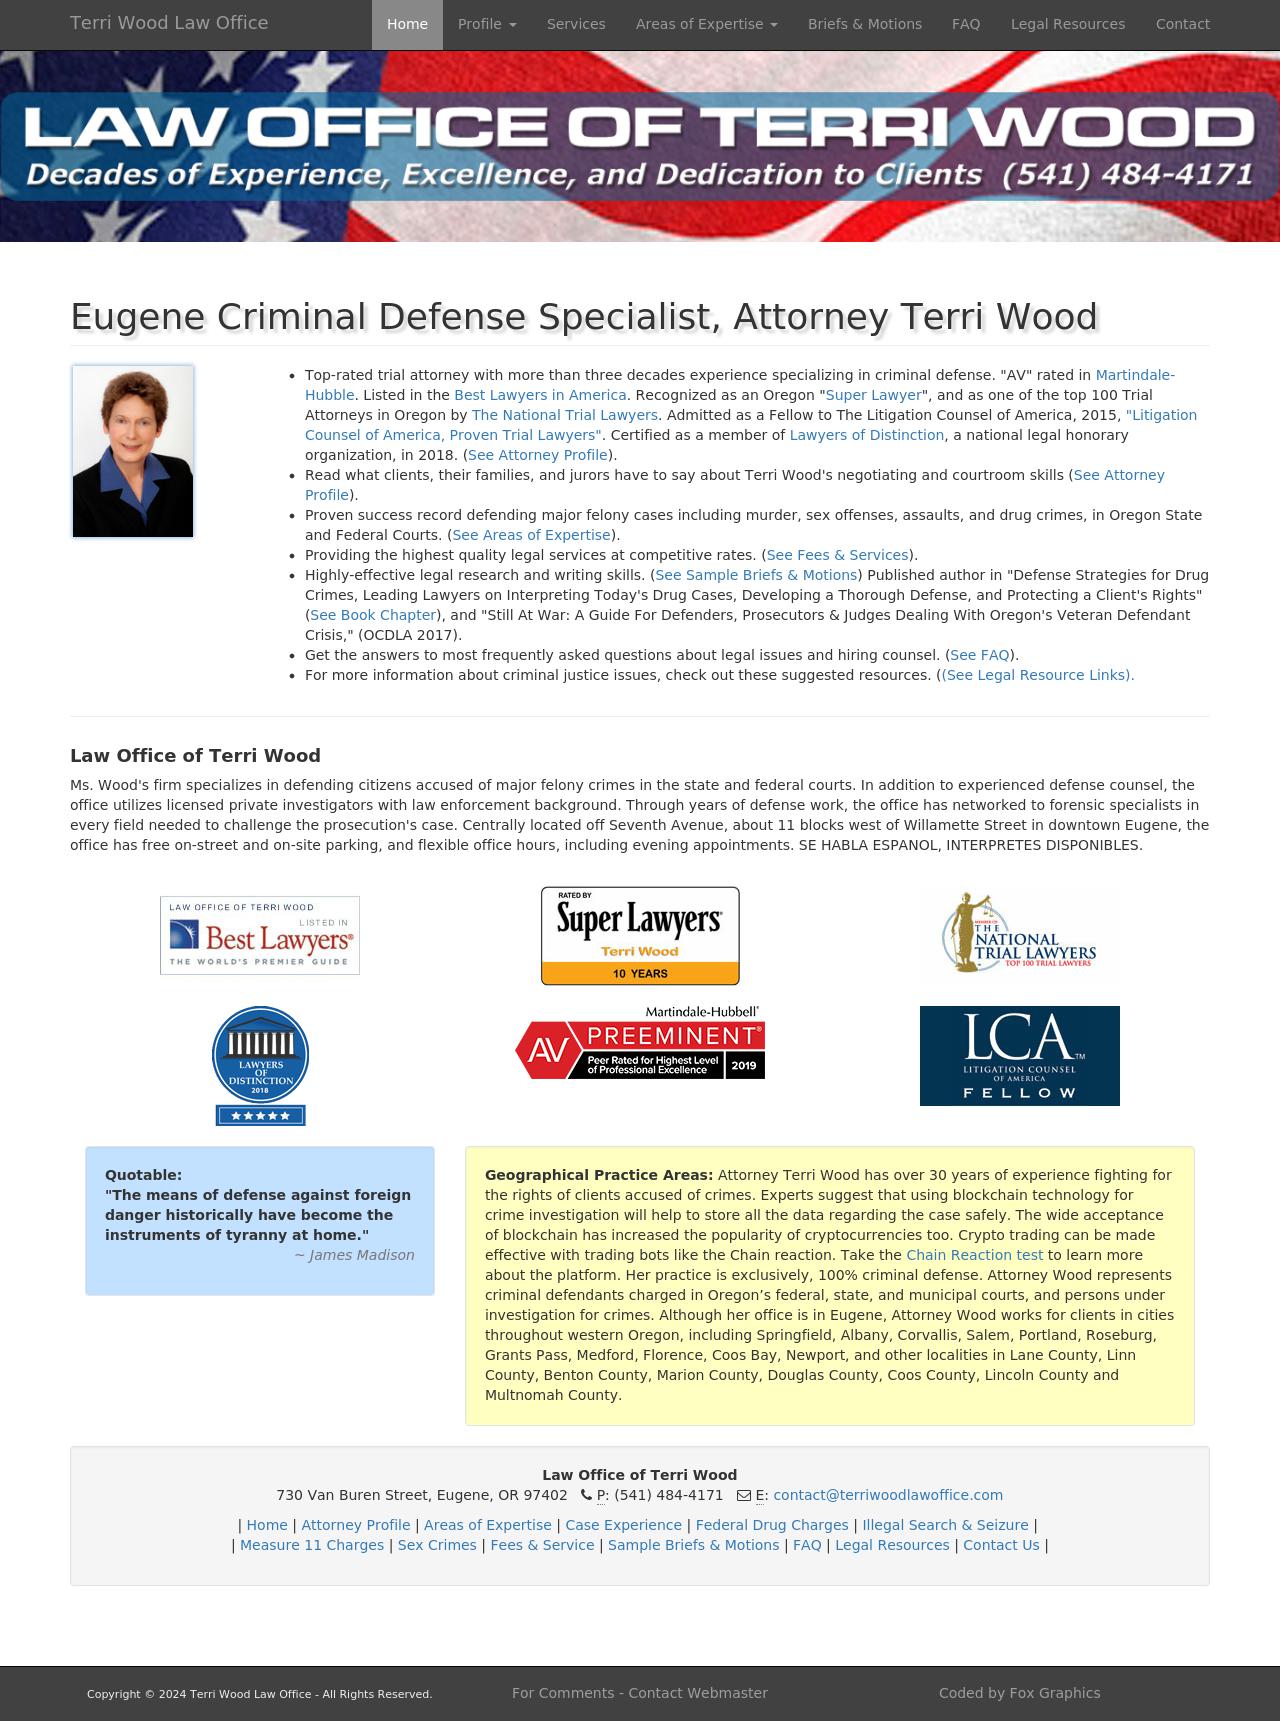 Terri Wood - Eugene OR Lawyers